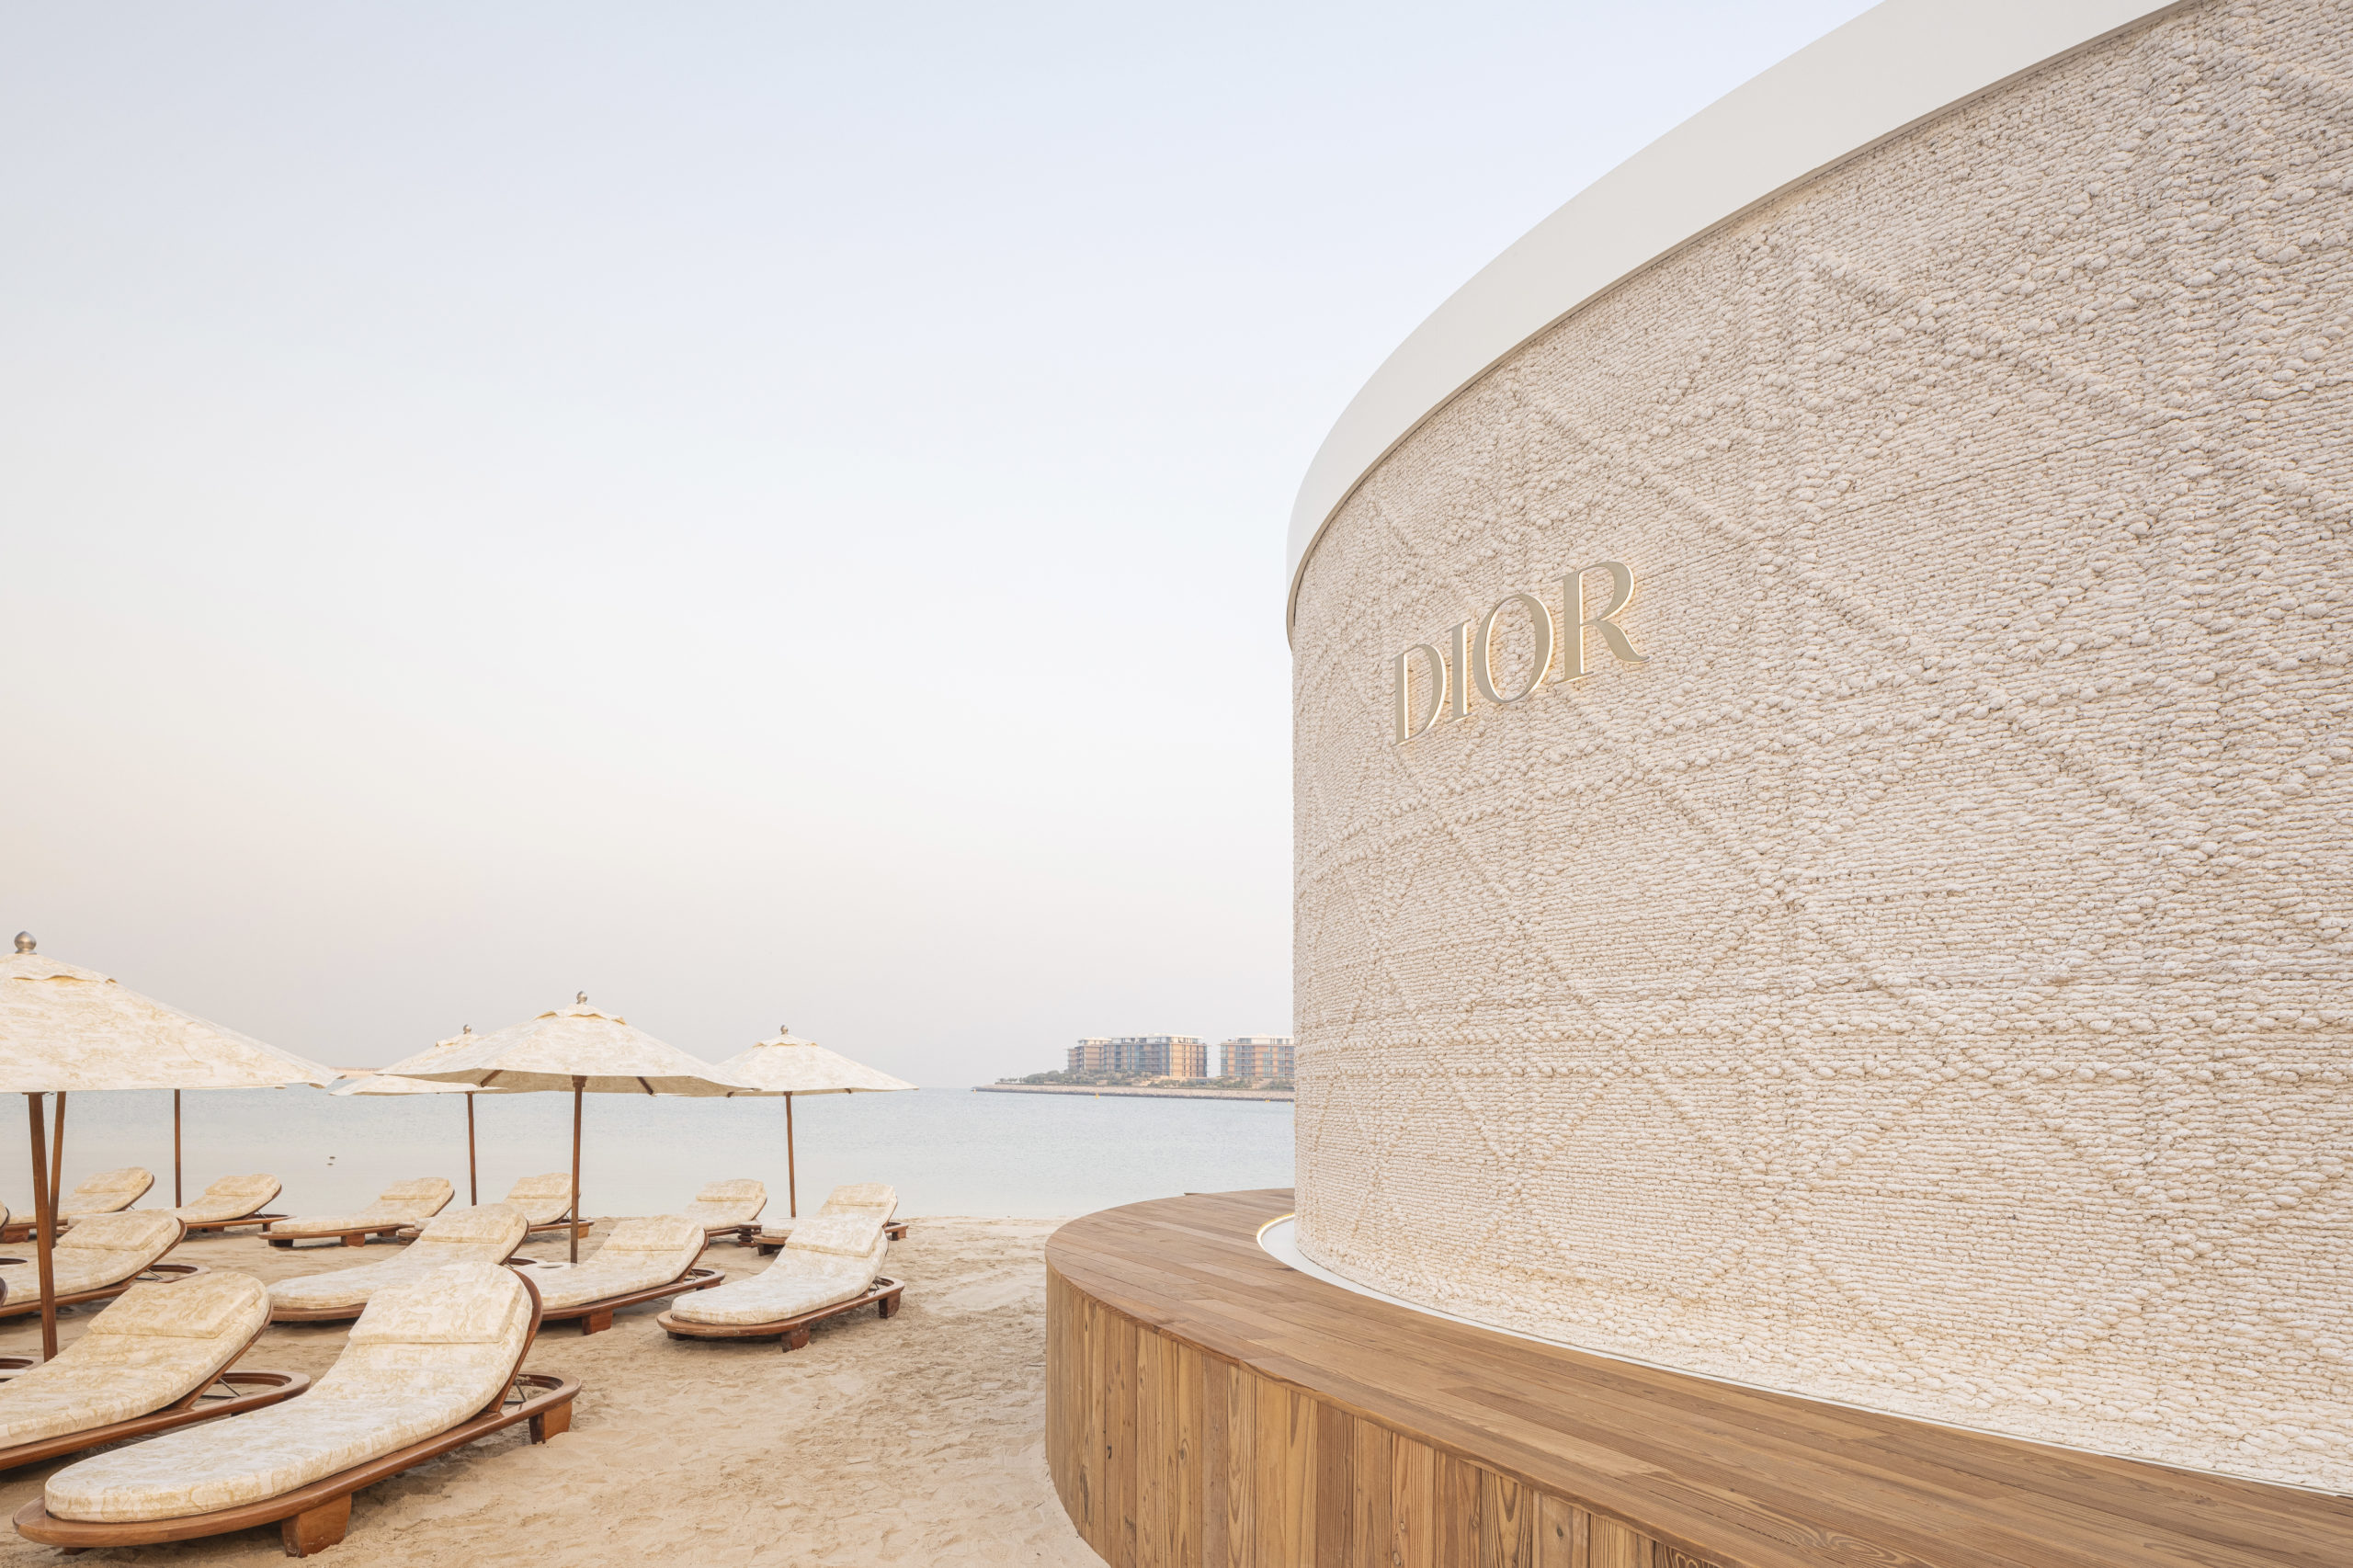 3D printed Dior concept store in Dubai.